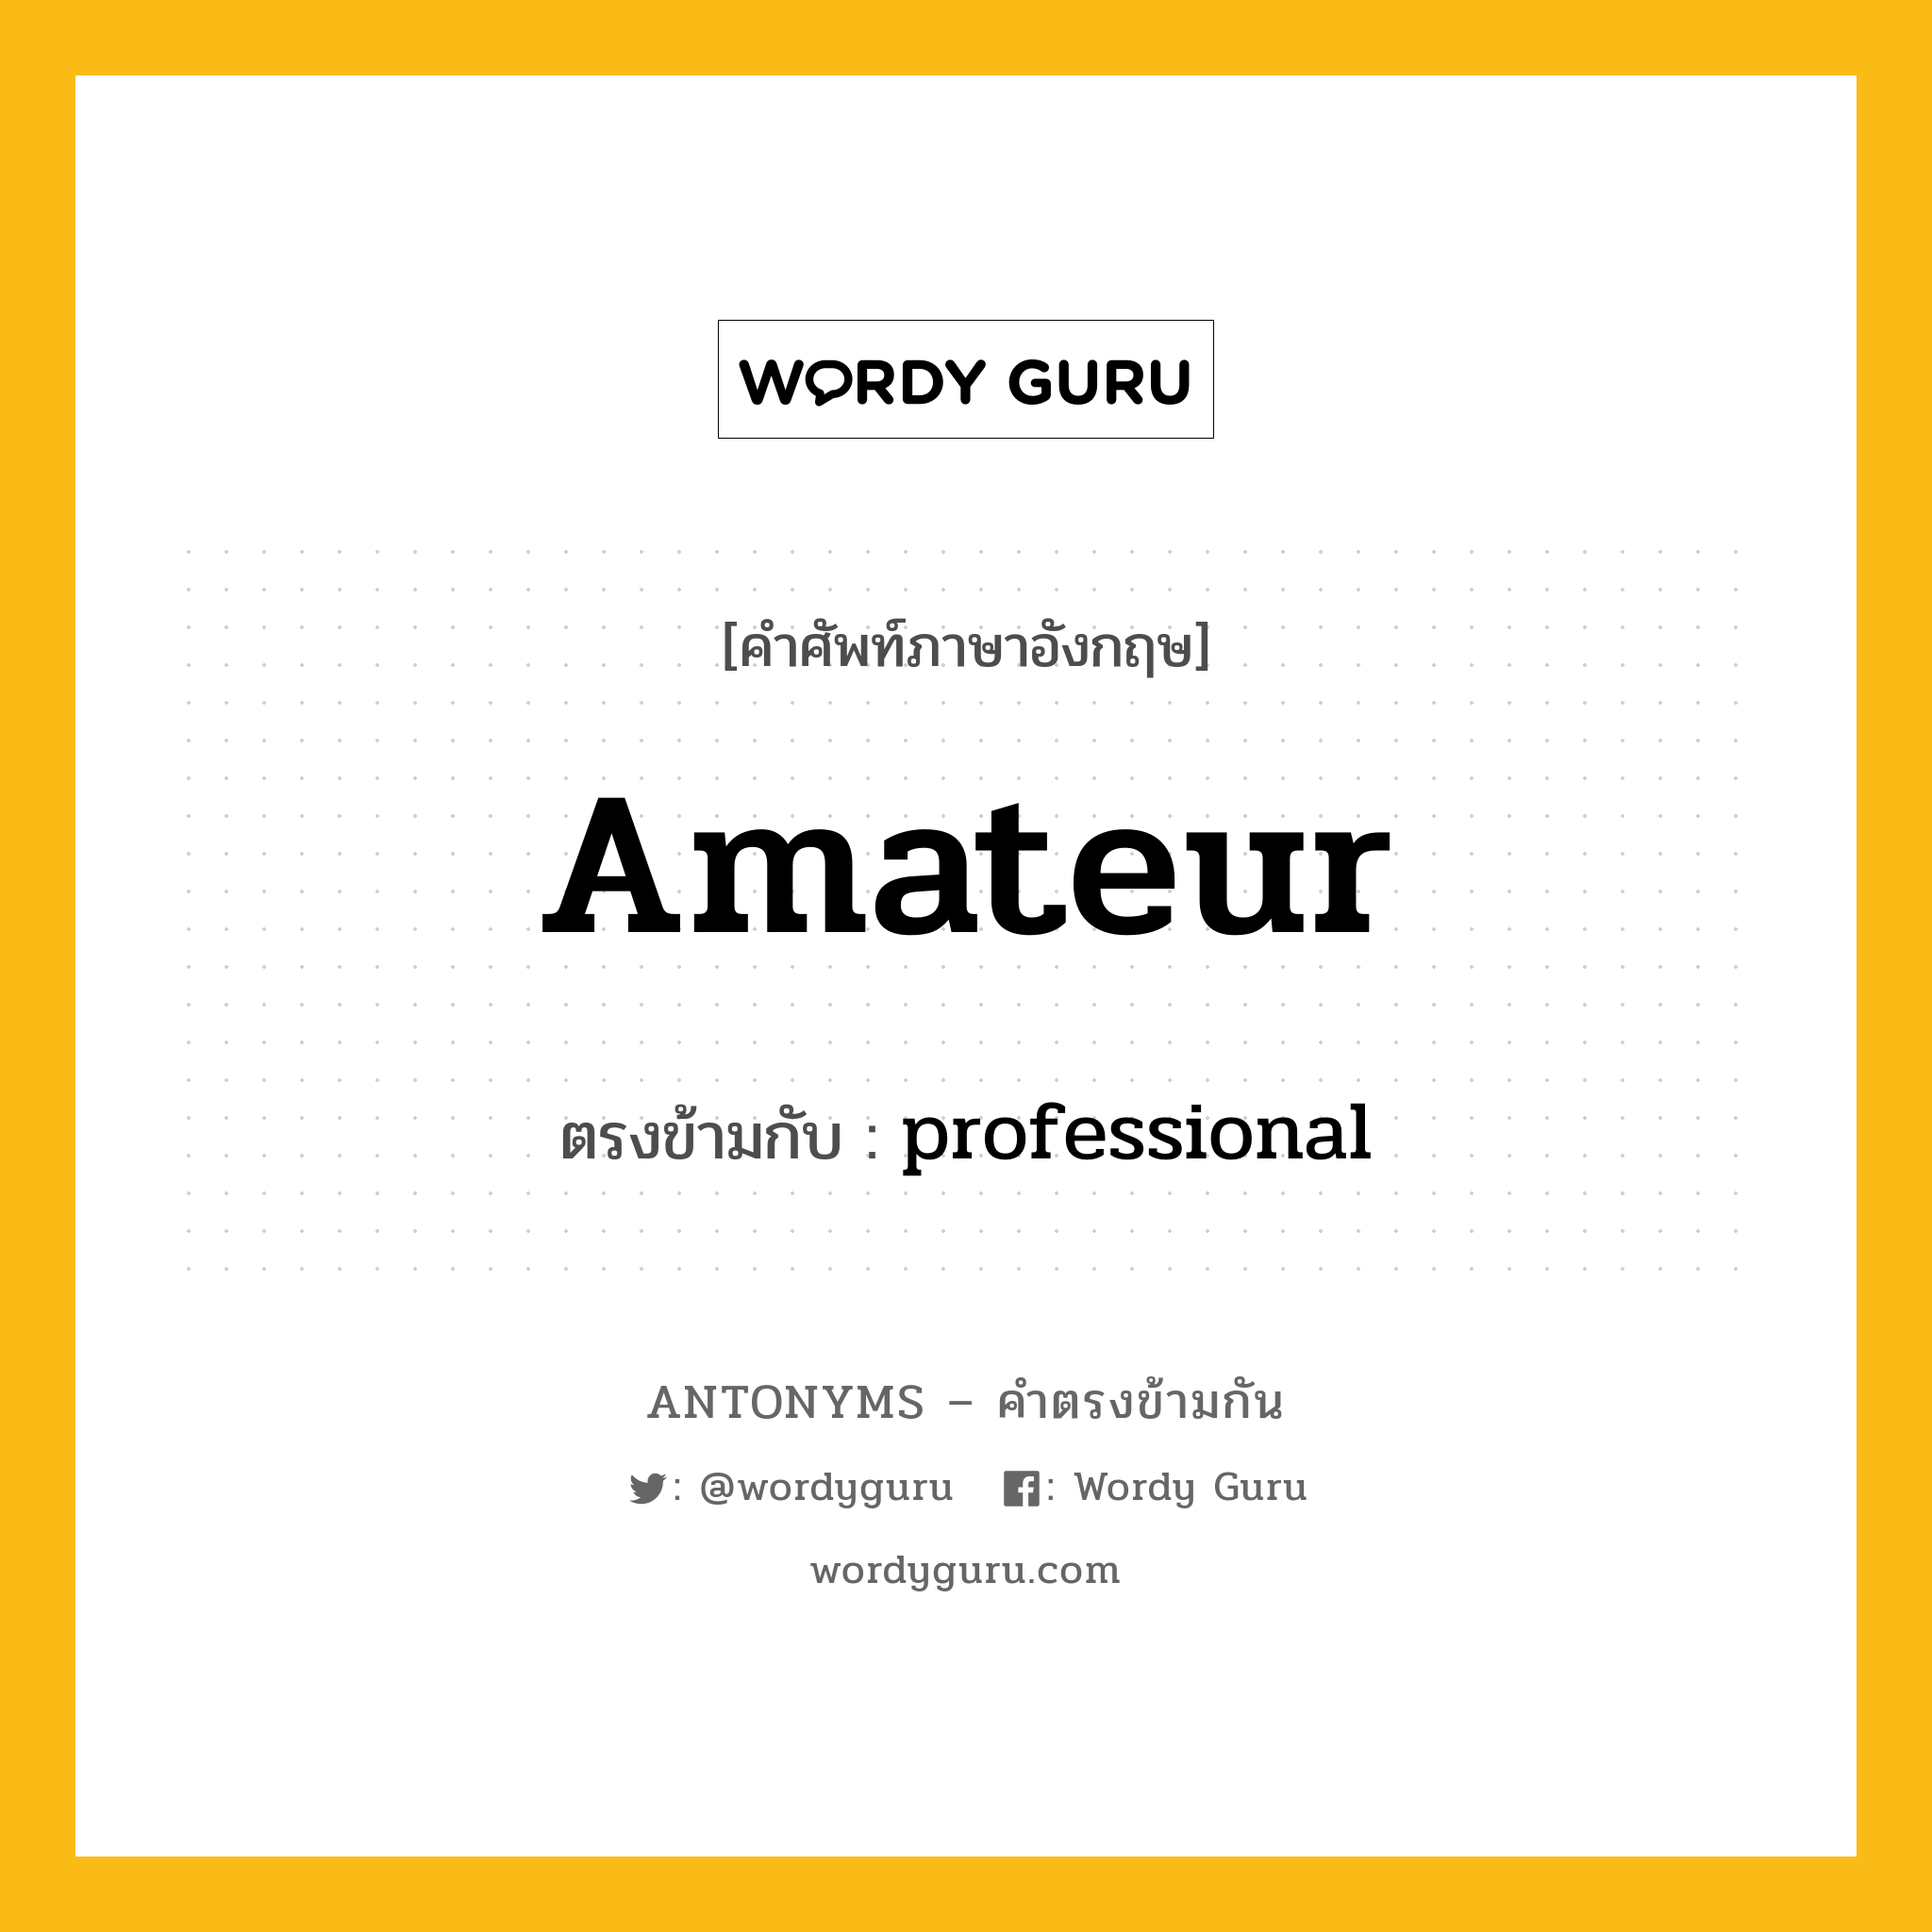 amateur เป็นคำตรงข้ามกับคำไหนบ้าง?, คำศัพท์ภาษาอังกฤษ amateur ตรงข้ามกับ professional หมวด professional